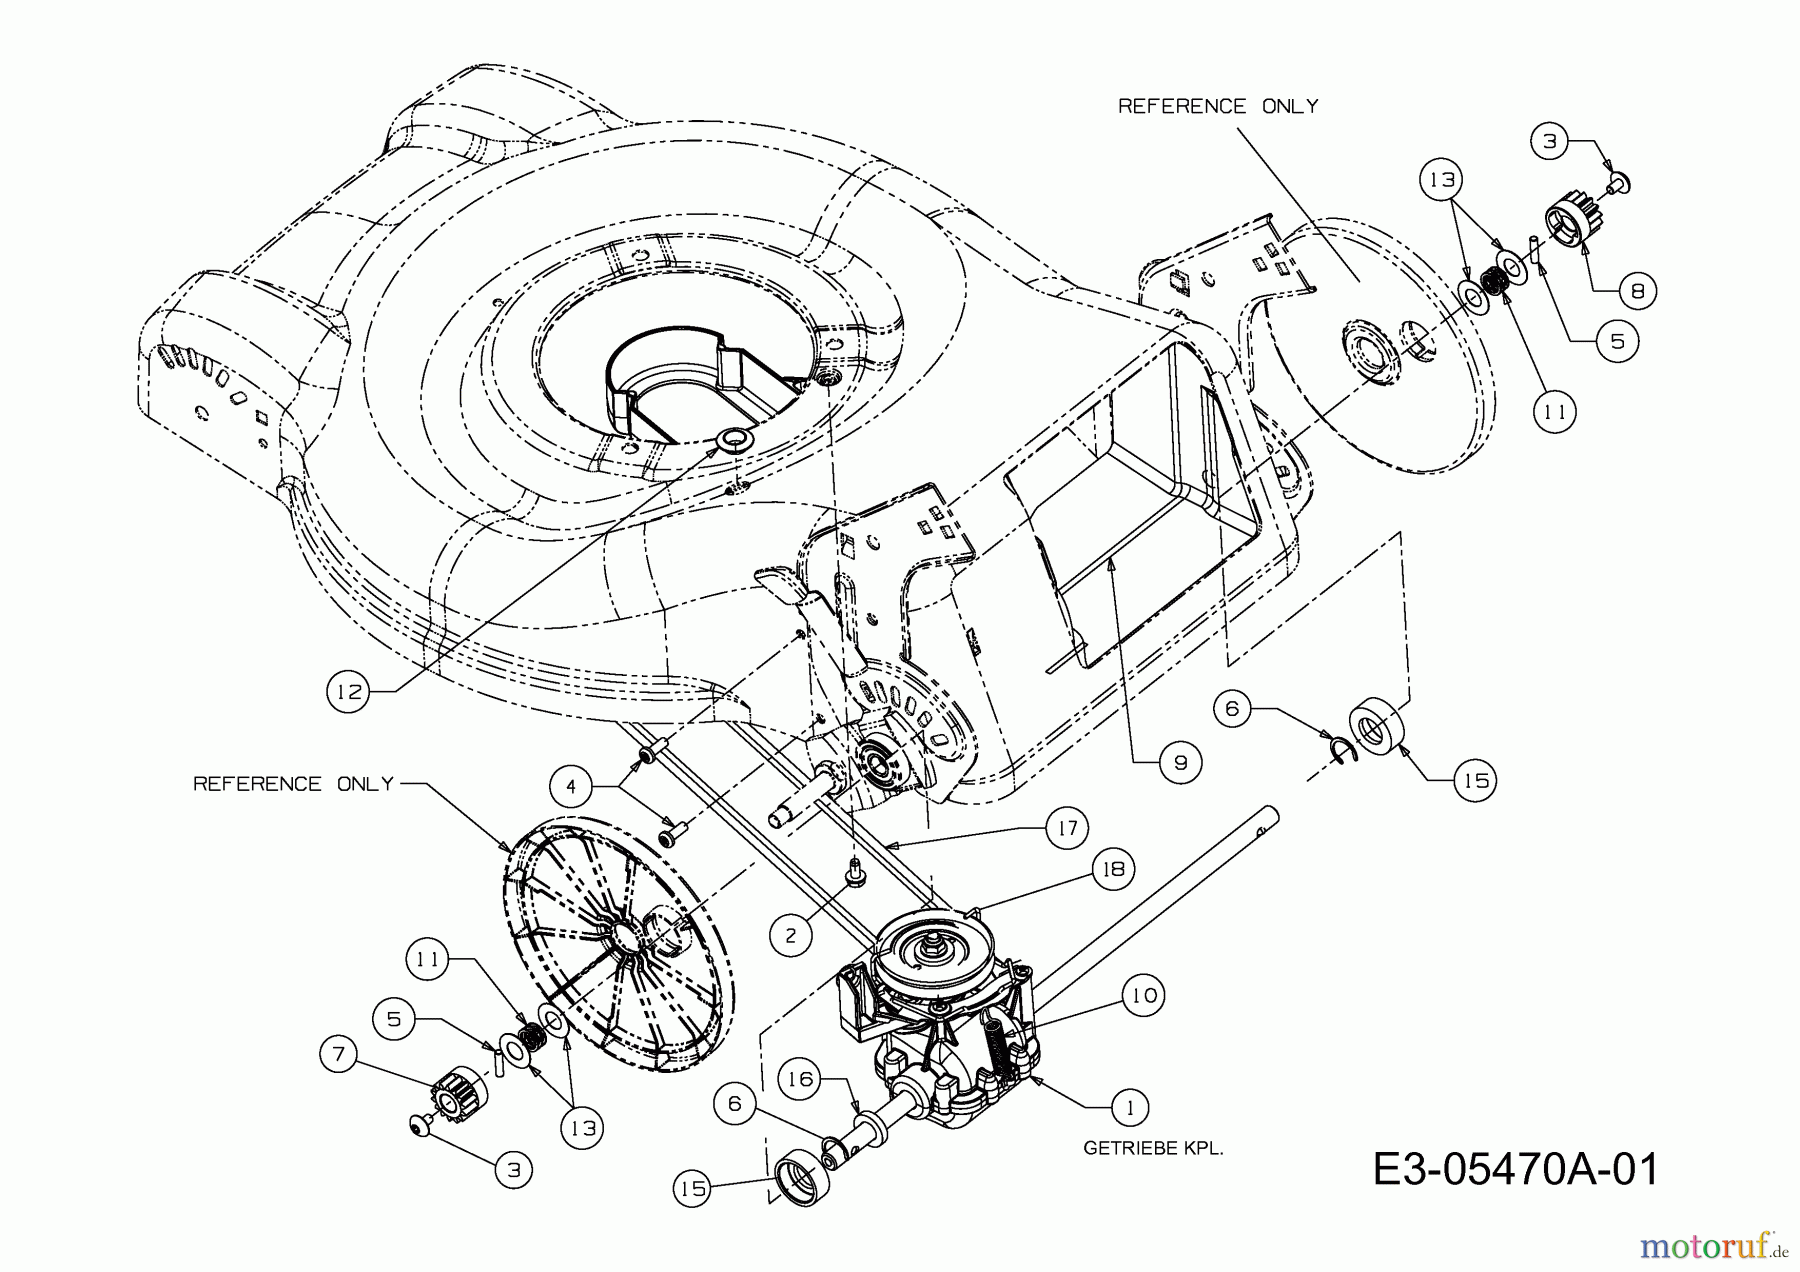  Ok Motormäher mit Antrieb 46 SPB 12C-J24J667  (2010) Getriebe